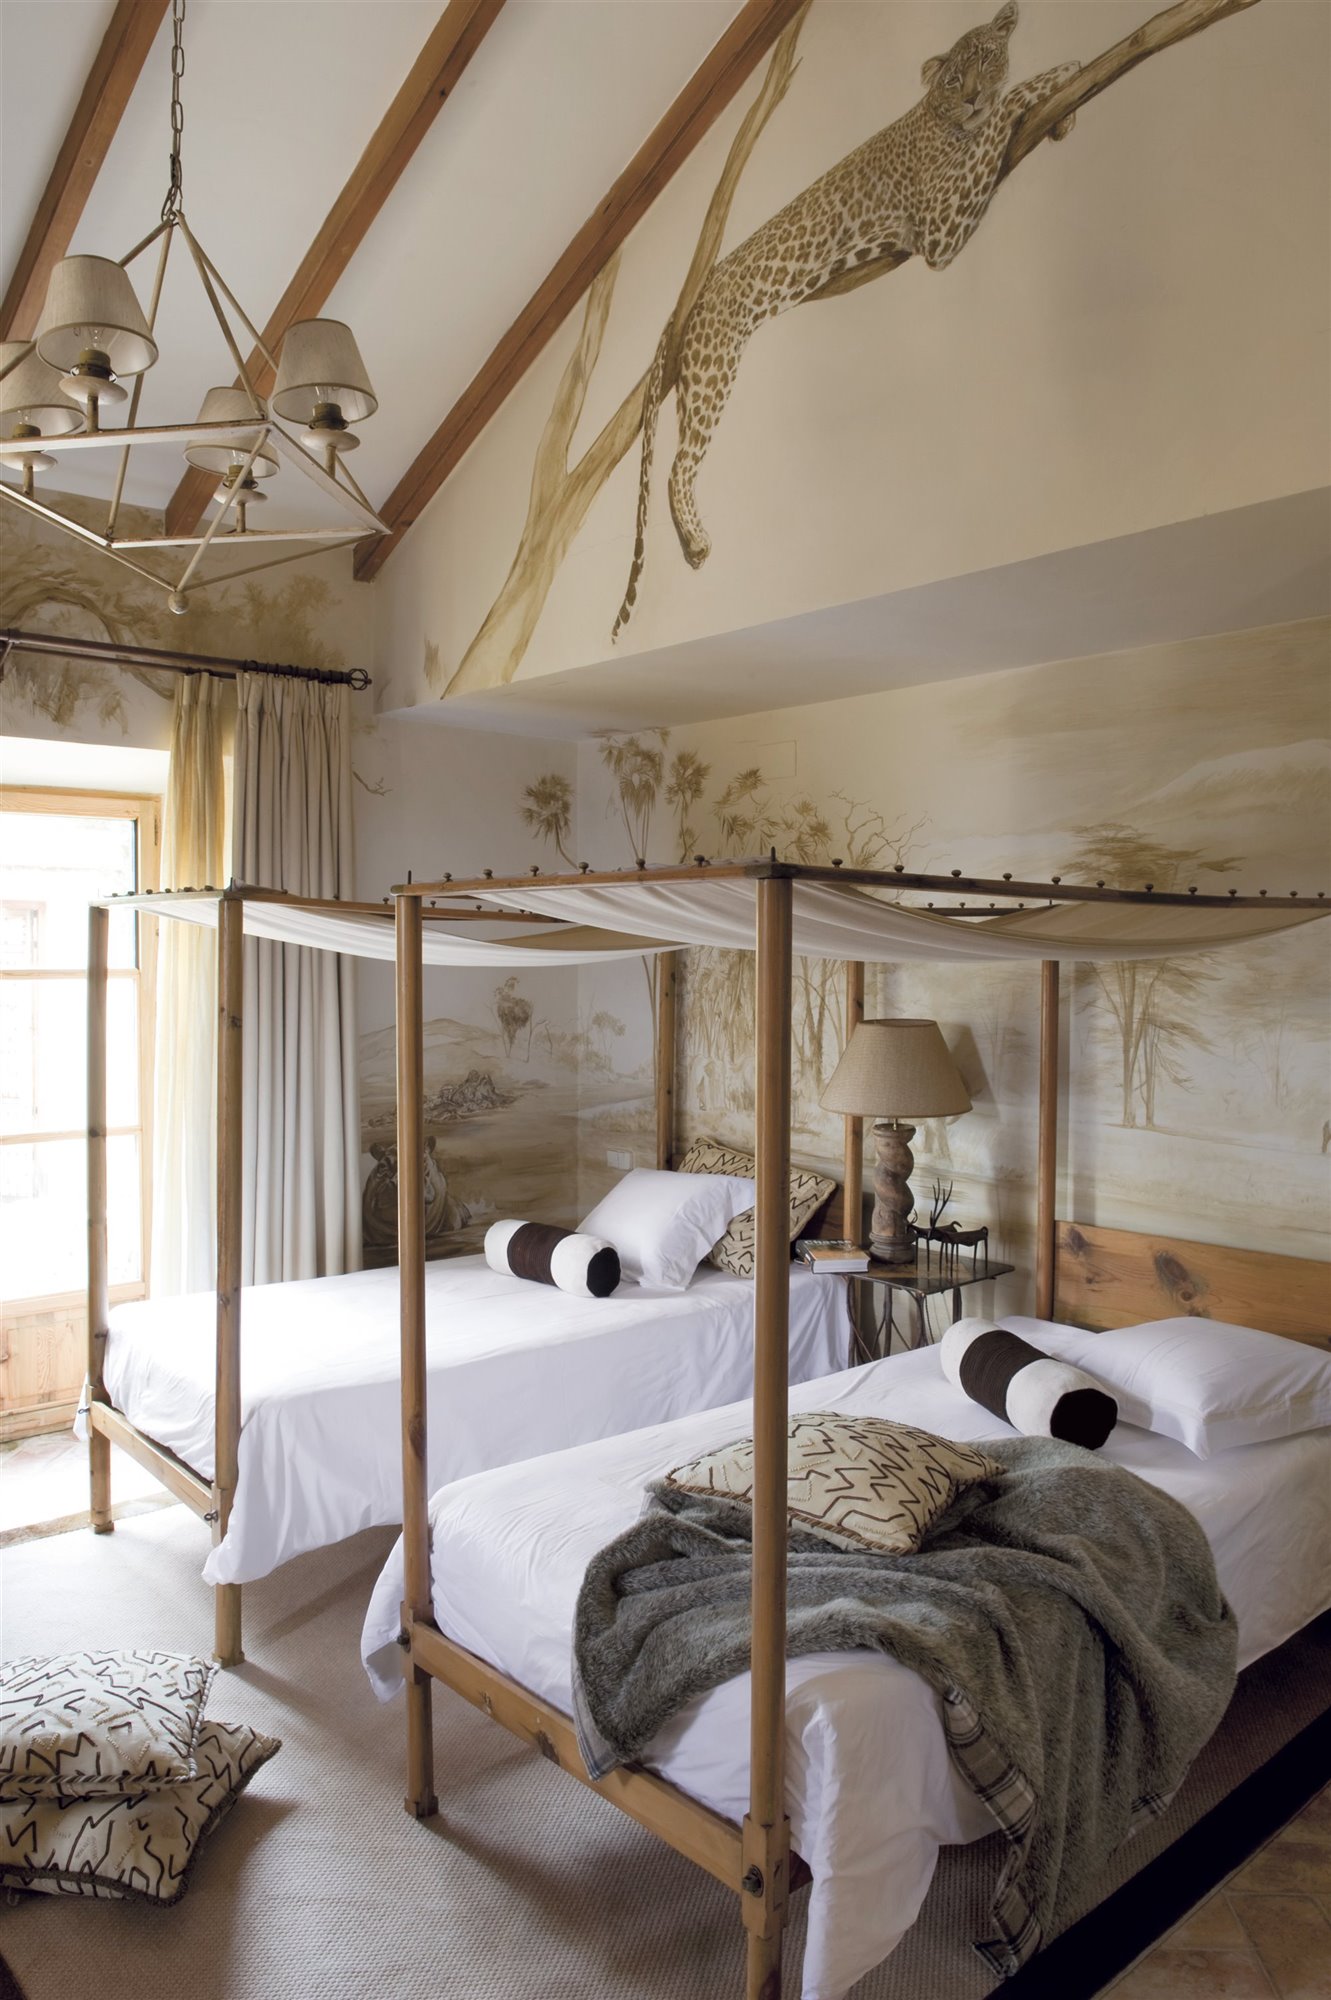 dormitorio estilo safari con fresco de animales, madera y cama con dosel